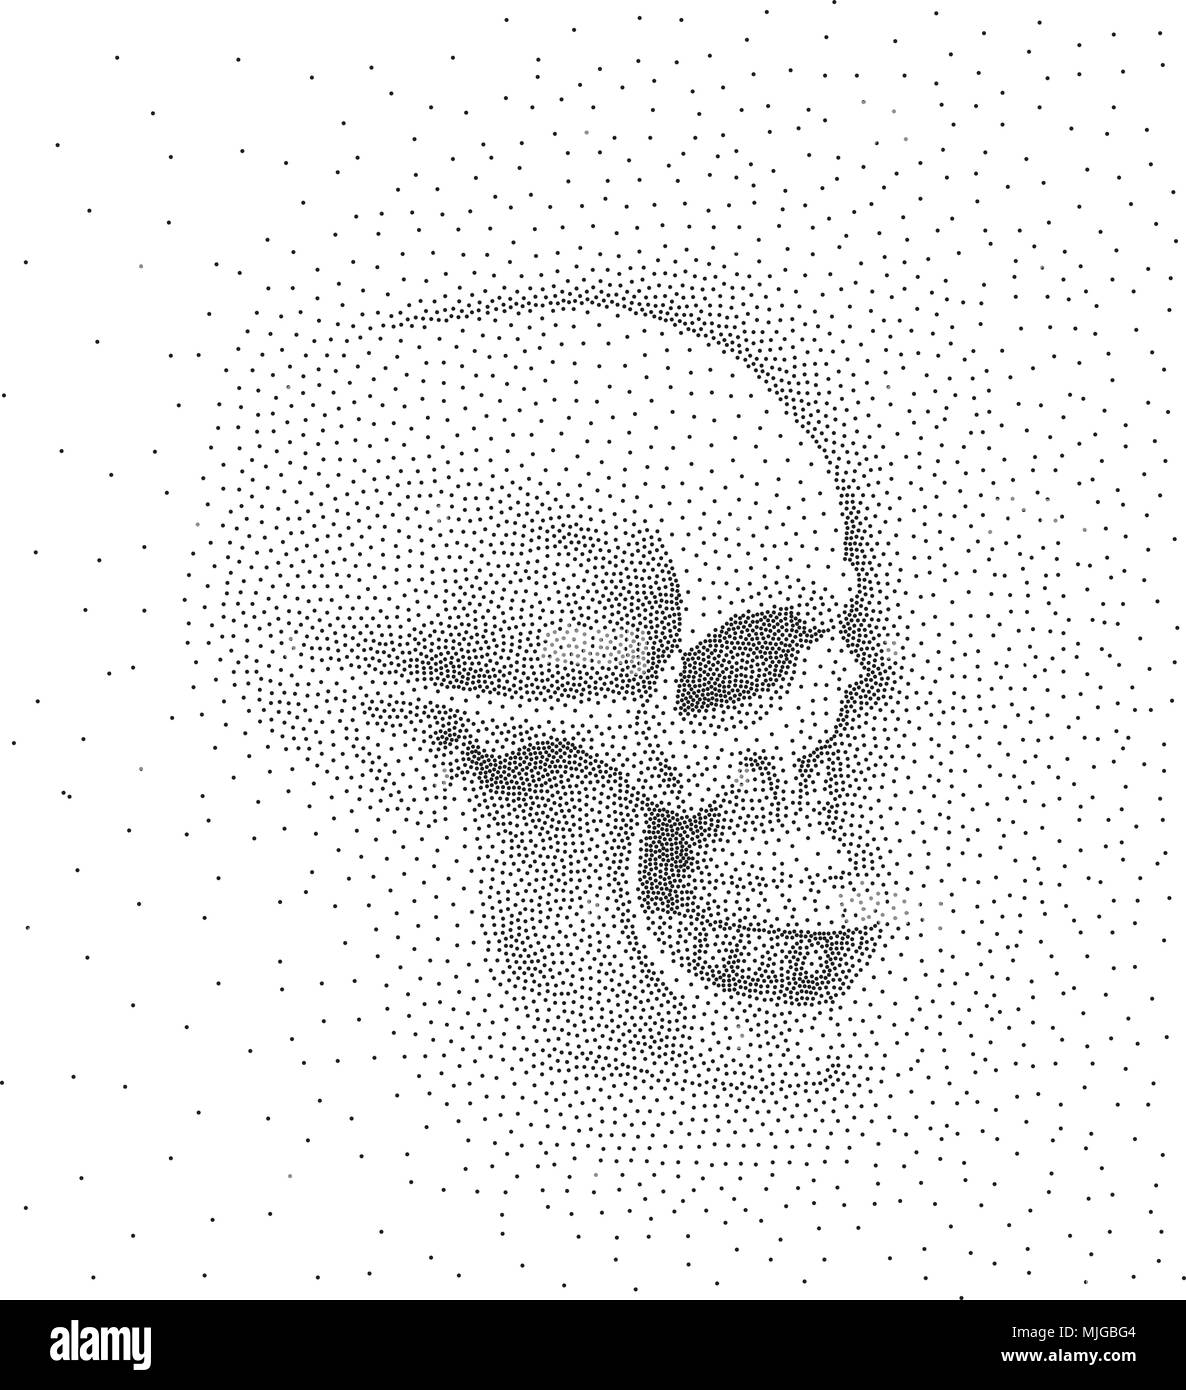 Cráneo en perfil sobre fondo blanco. Simples puntos negros sobre fondo blanco. Pointillism Digital. Imagen de punto Ilustración del Vector